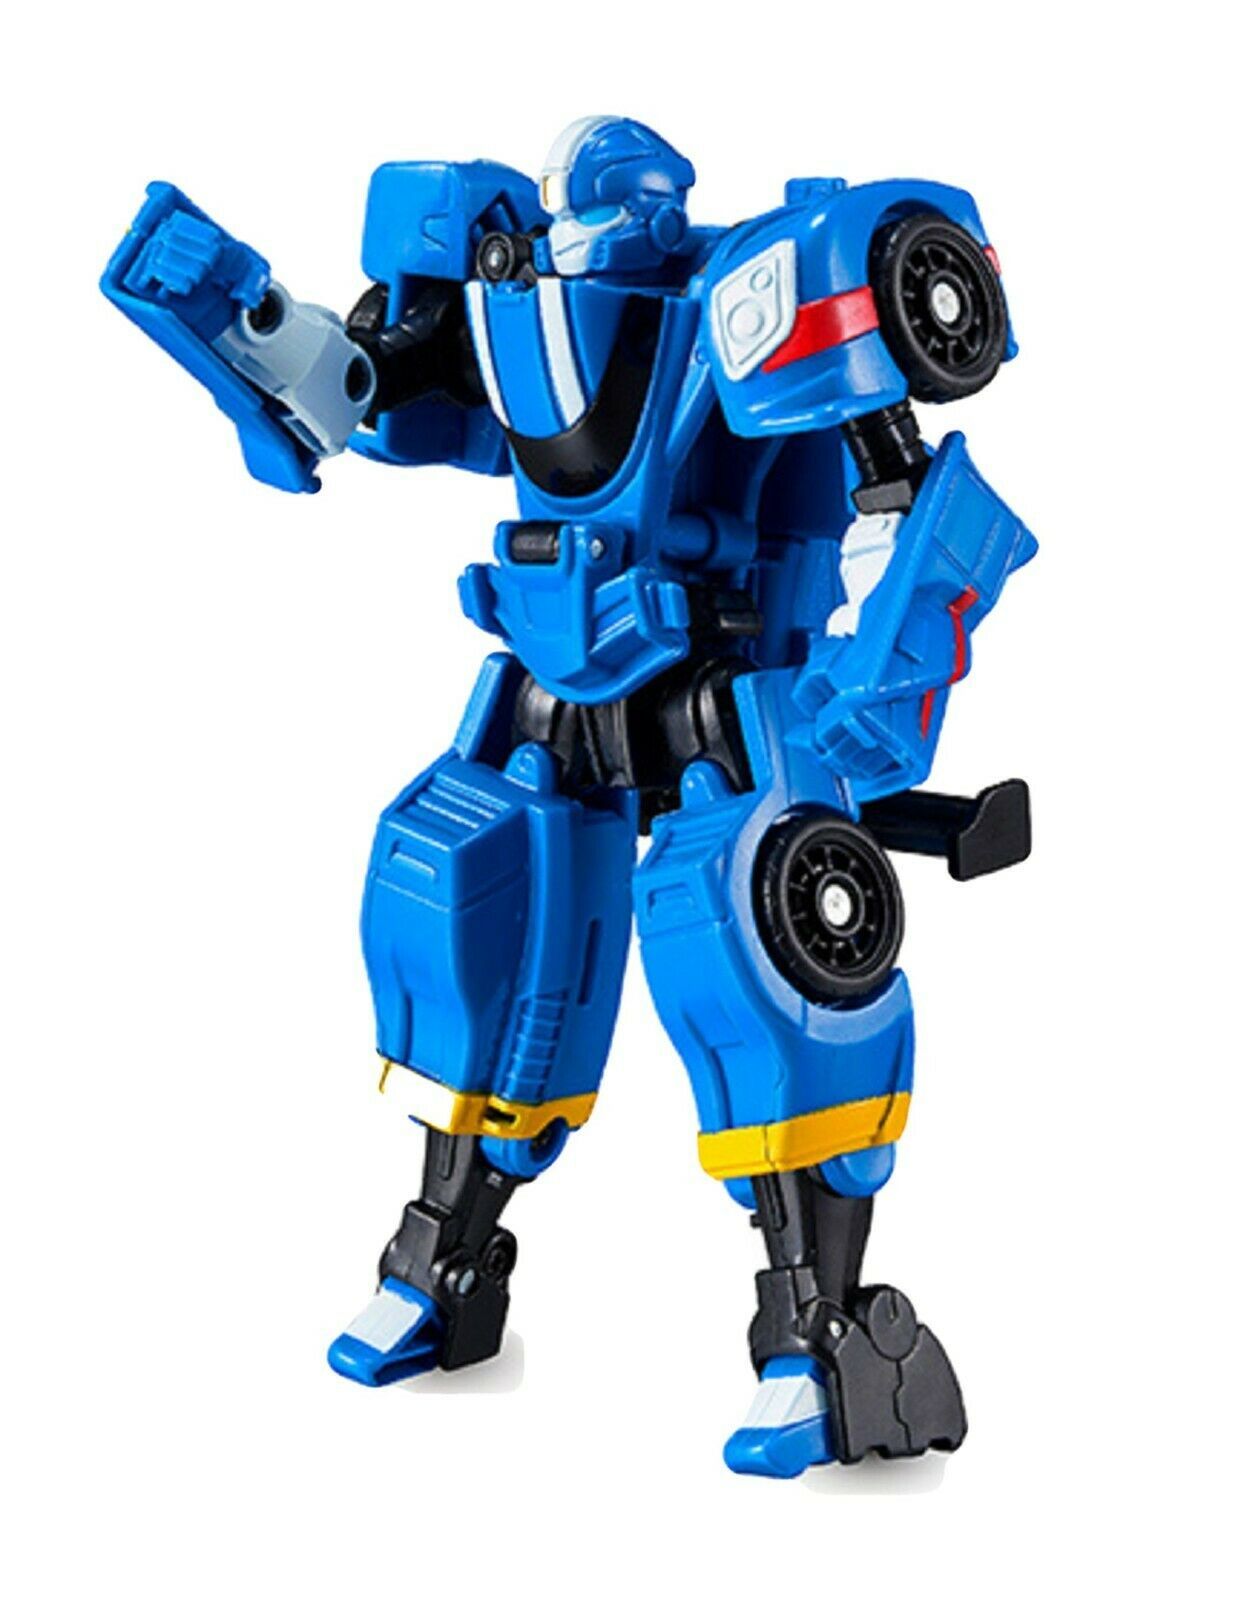  Tobot  Mini Speed Toy  Robot  Transforming Transformation 